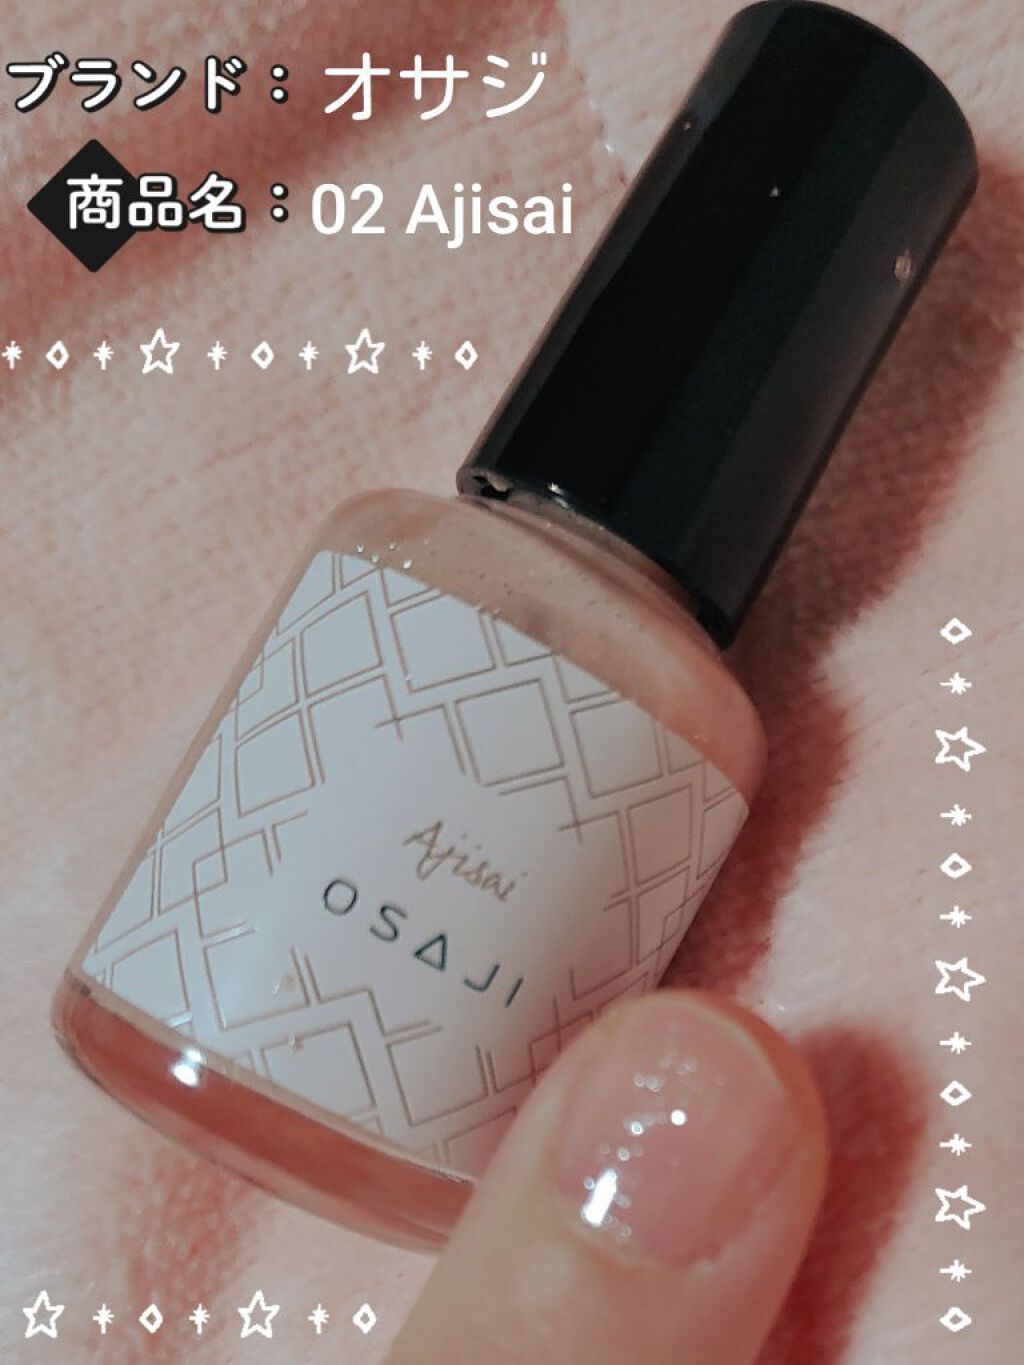 オサジ アップリフト ネイルカラー 02 Ajisai〈紫陽花〉 OSAJI(オサジ) LIPS